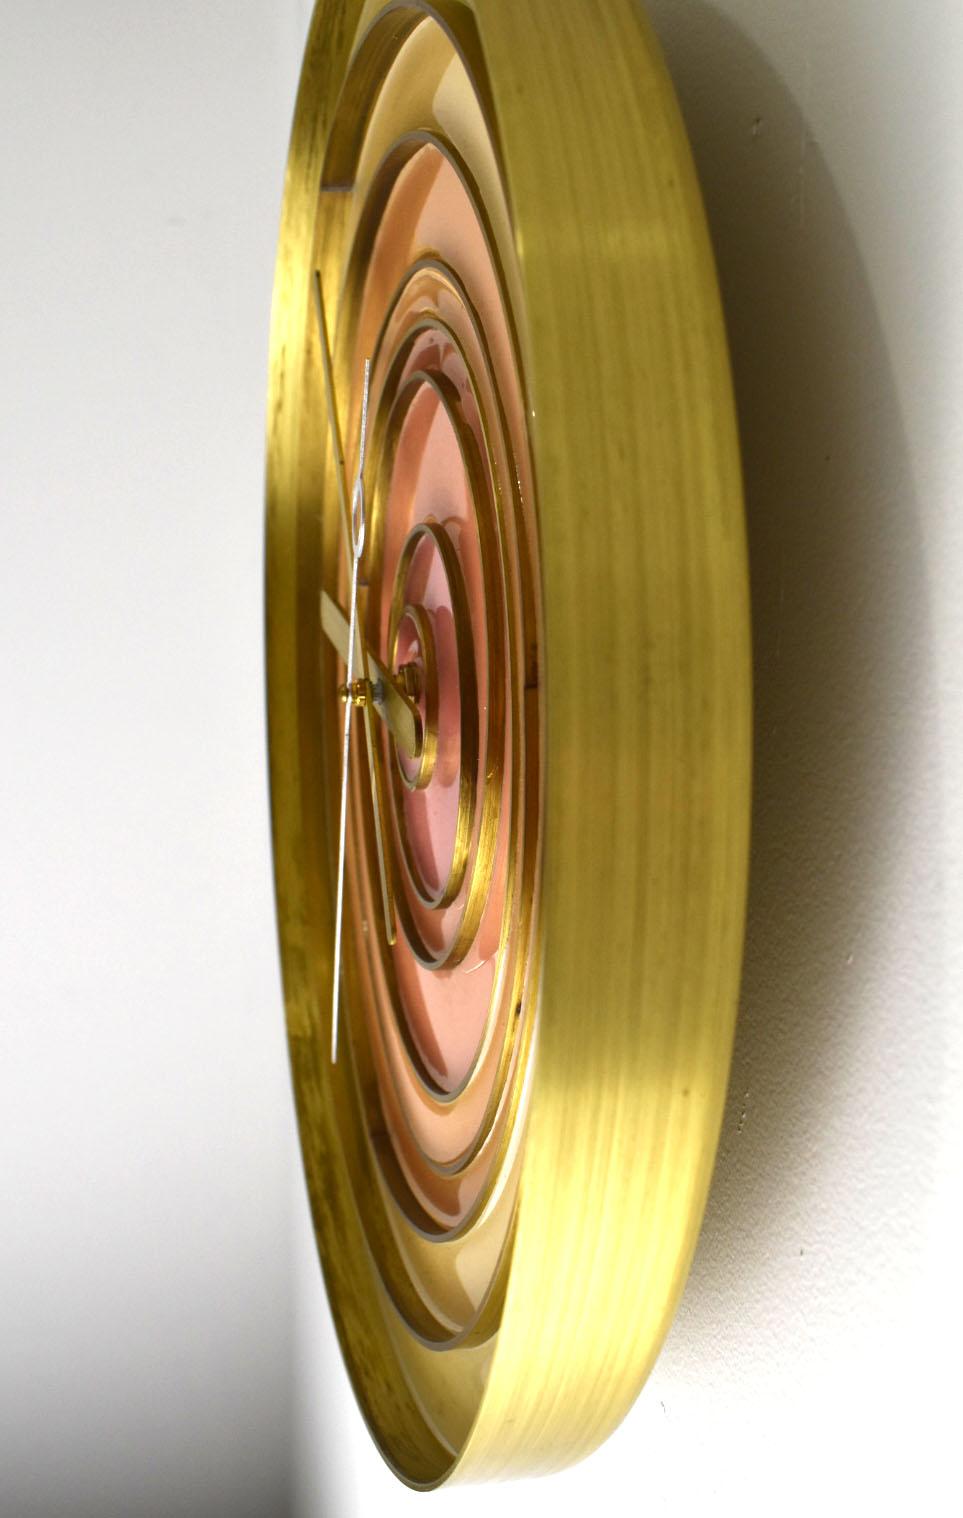 Diese atemberaubende Uhr ist aus einem einzigen gedrehten Stück massiven Messings gefertigt.  Sie ist  mit eingelegten Messingringen unterschiedlicher Größe gestaltet und anschließend mit getöntem Epoxidharz ausgegossen.   Die Stunden- und